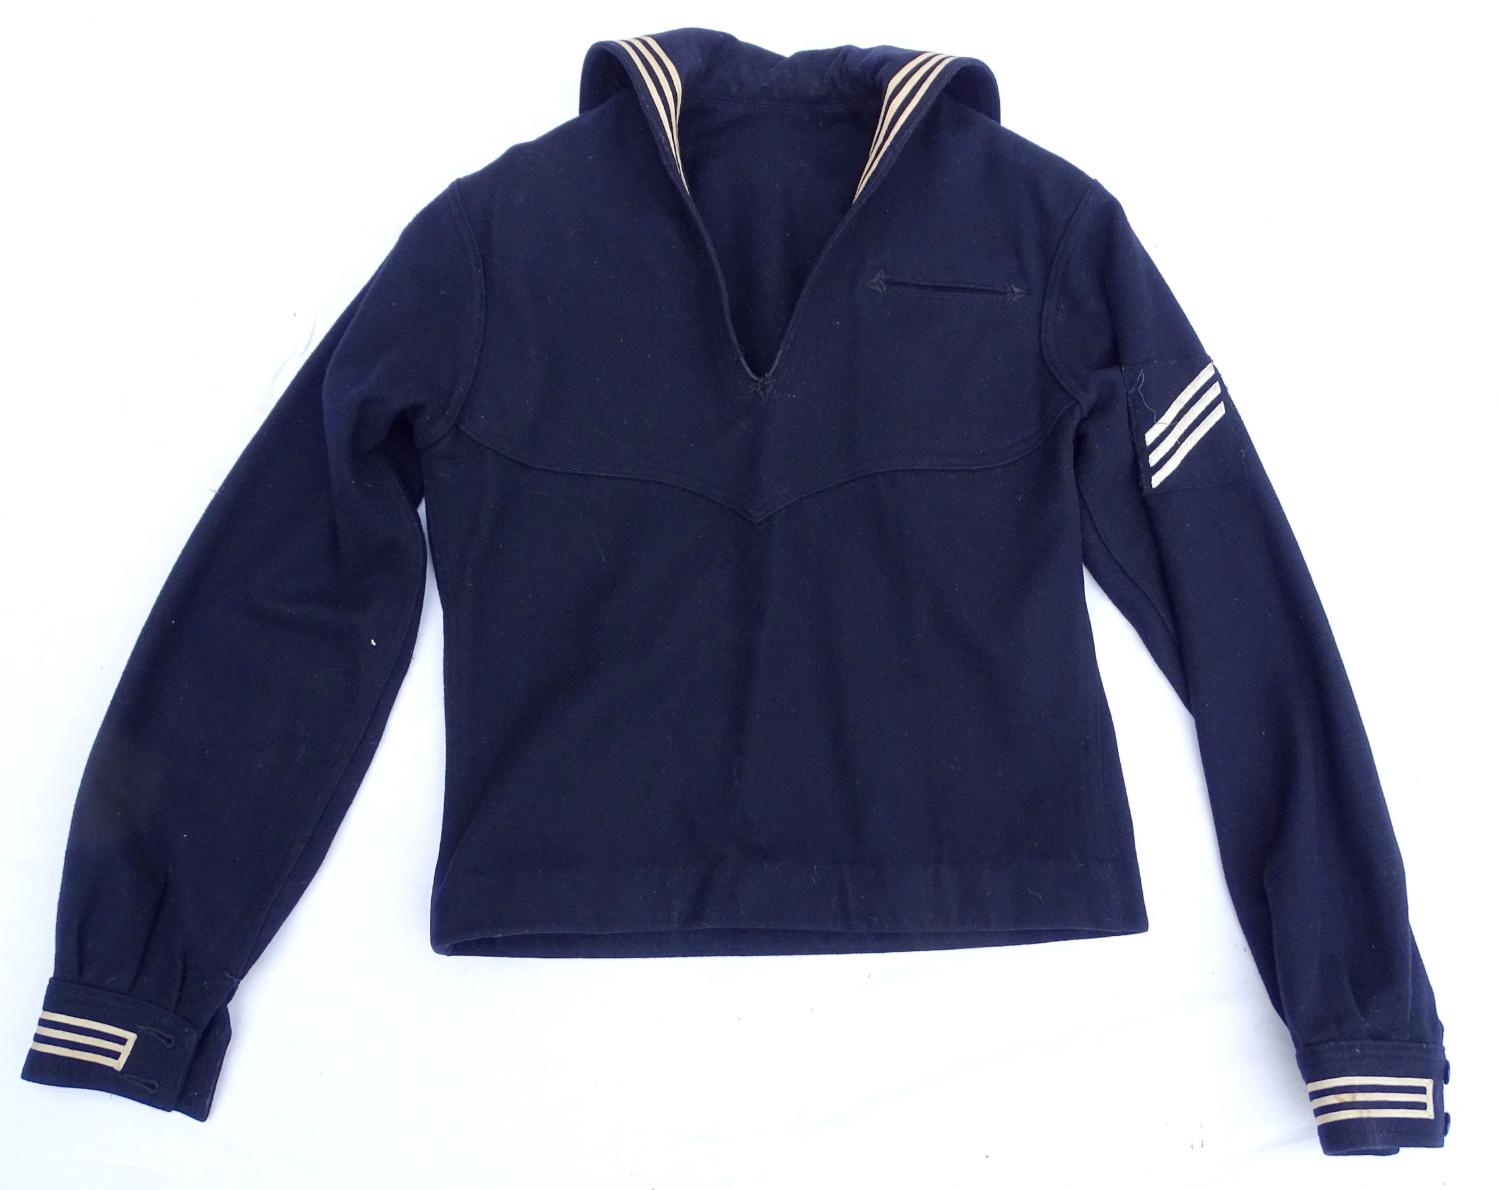 US Navy. Dress blue jumper